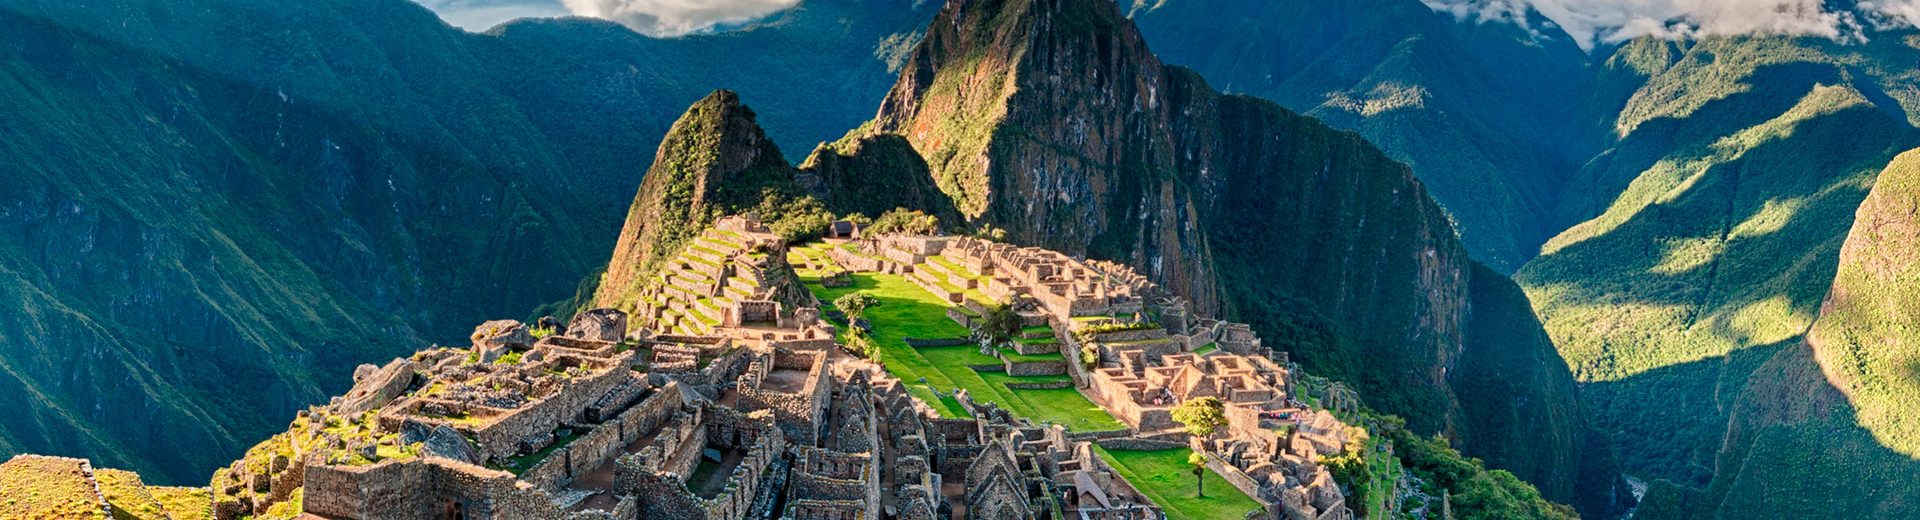 Tudo sobre Machu Picchu: Um lugar fantástico entre as montanhas peruanas